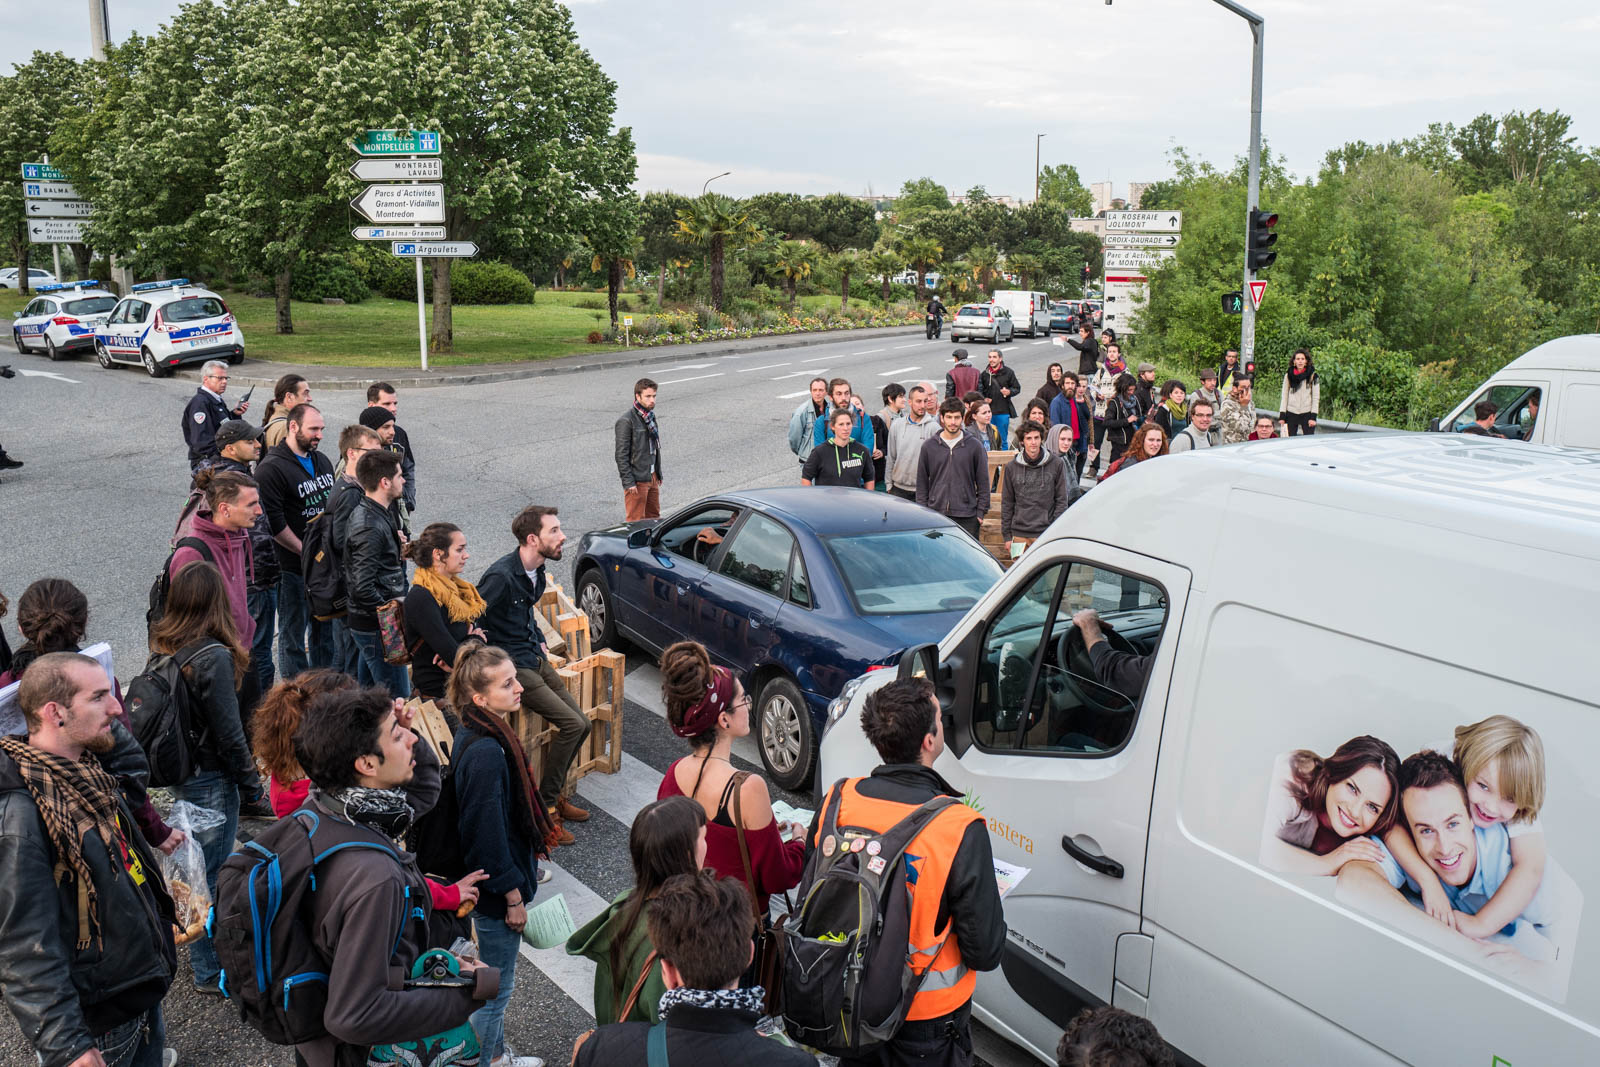 Très tôt le matin, plusieurs dizaines de manifestants, notamment du mouvement Nuit Debout, ont effectué des barrages filtrants aux sorties de rocade comme ici à Balma-Gramont pour dénoncer la loi Travail voulue par le gouvernement de Manuel Valls et de sa ministre du travail Myriam El-Khomri. De nombreux ralentissements et bouchons ont été enregistré alors que devait se tenir la grande manifestation à l’appel de l’intersyndicale dans l’après-midi. Toulouse, France-26 mai 2016.